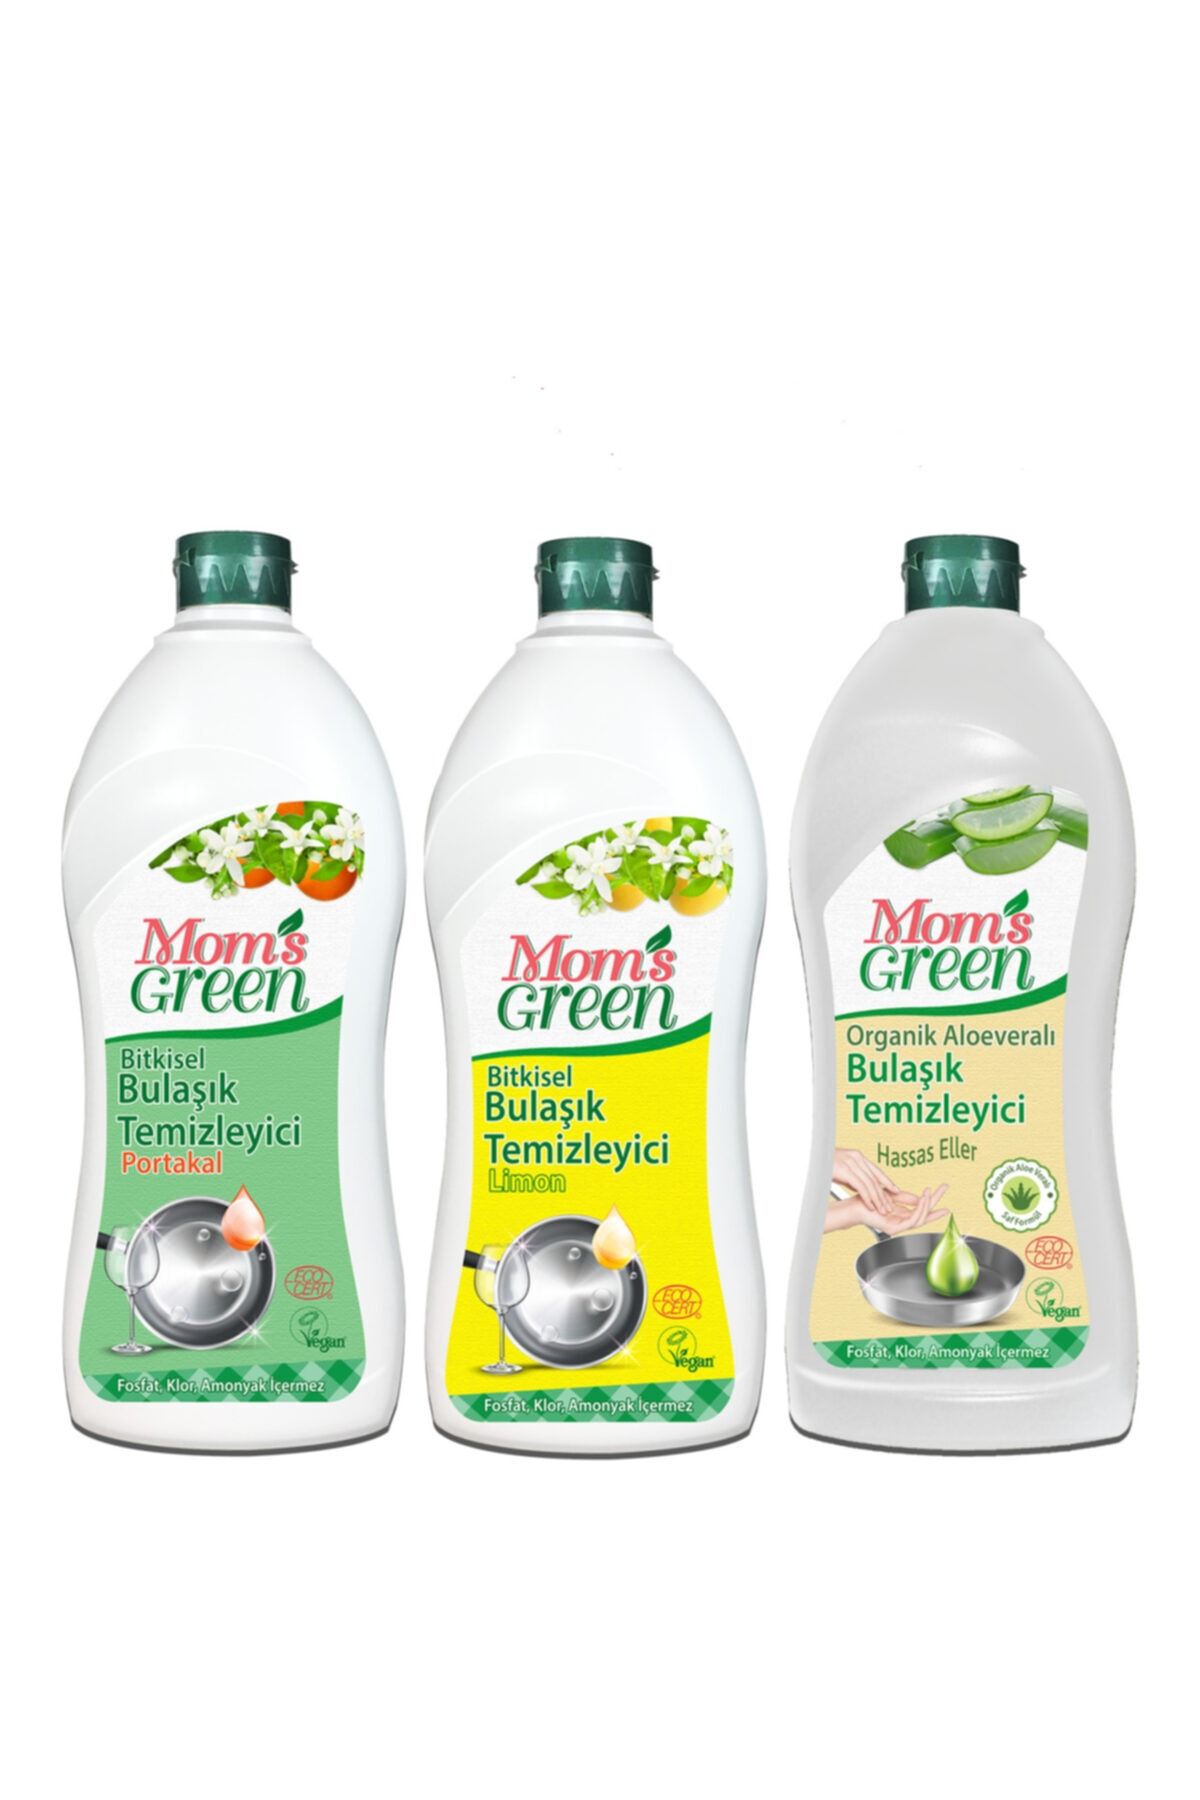 Mom's Green 3'lü Set Bitkisel Bulaşık Temizleyici Limon Ve Portakal Organik Aloevera